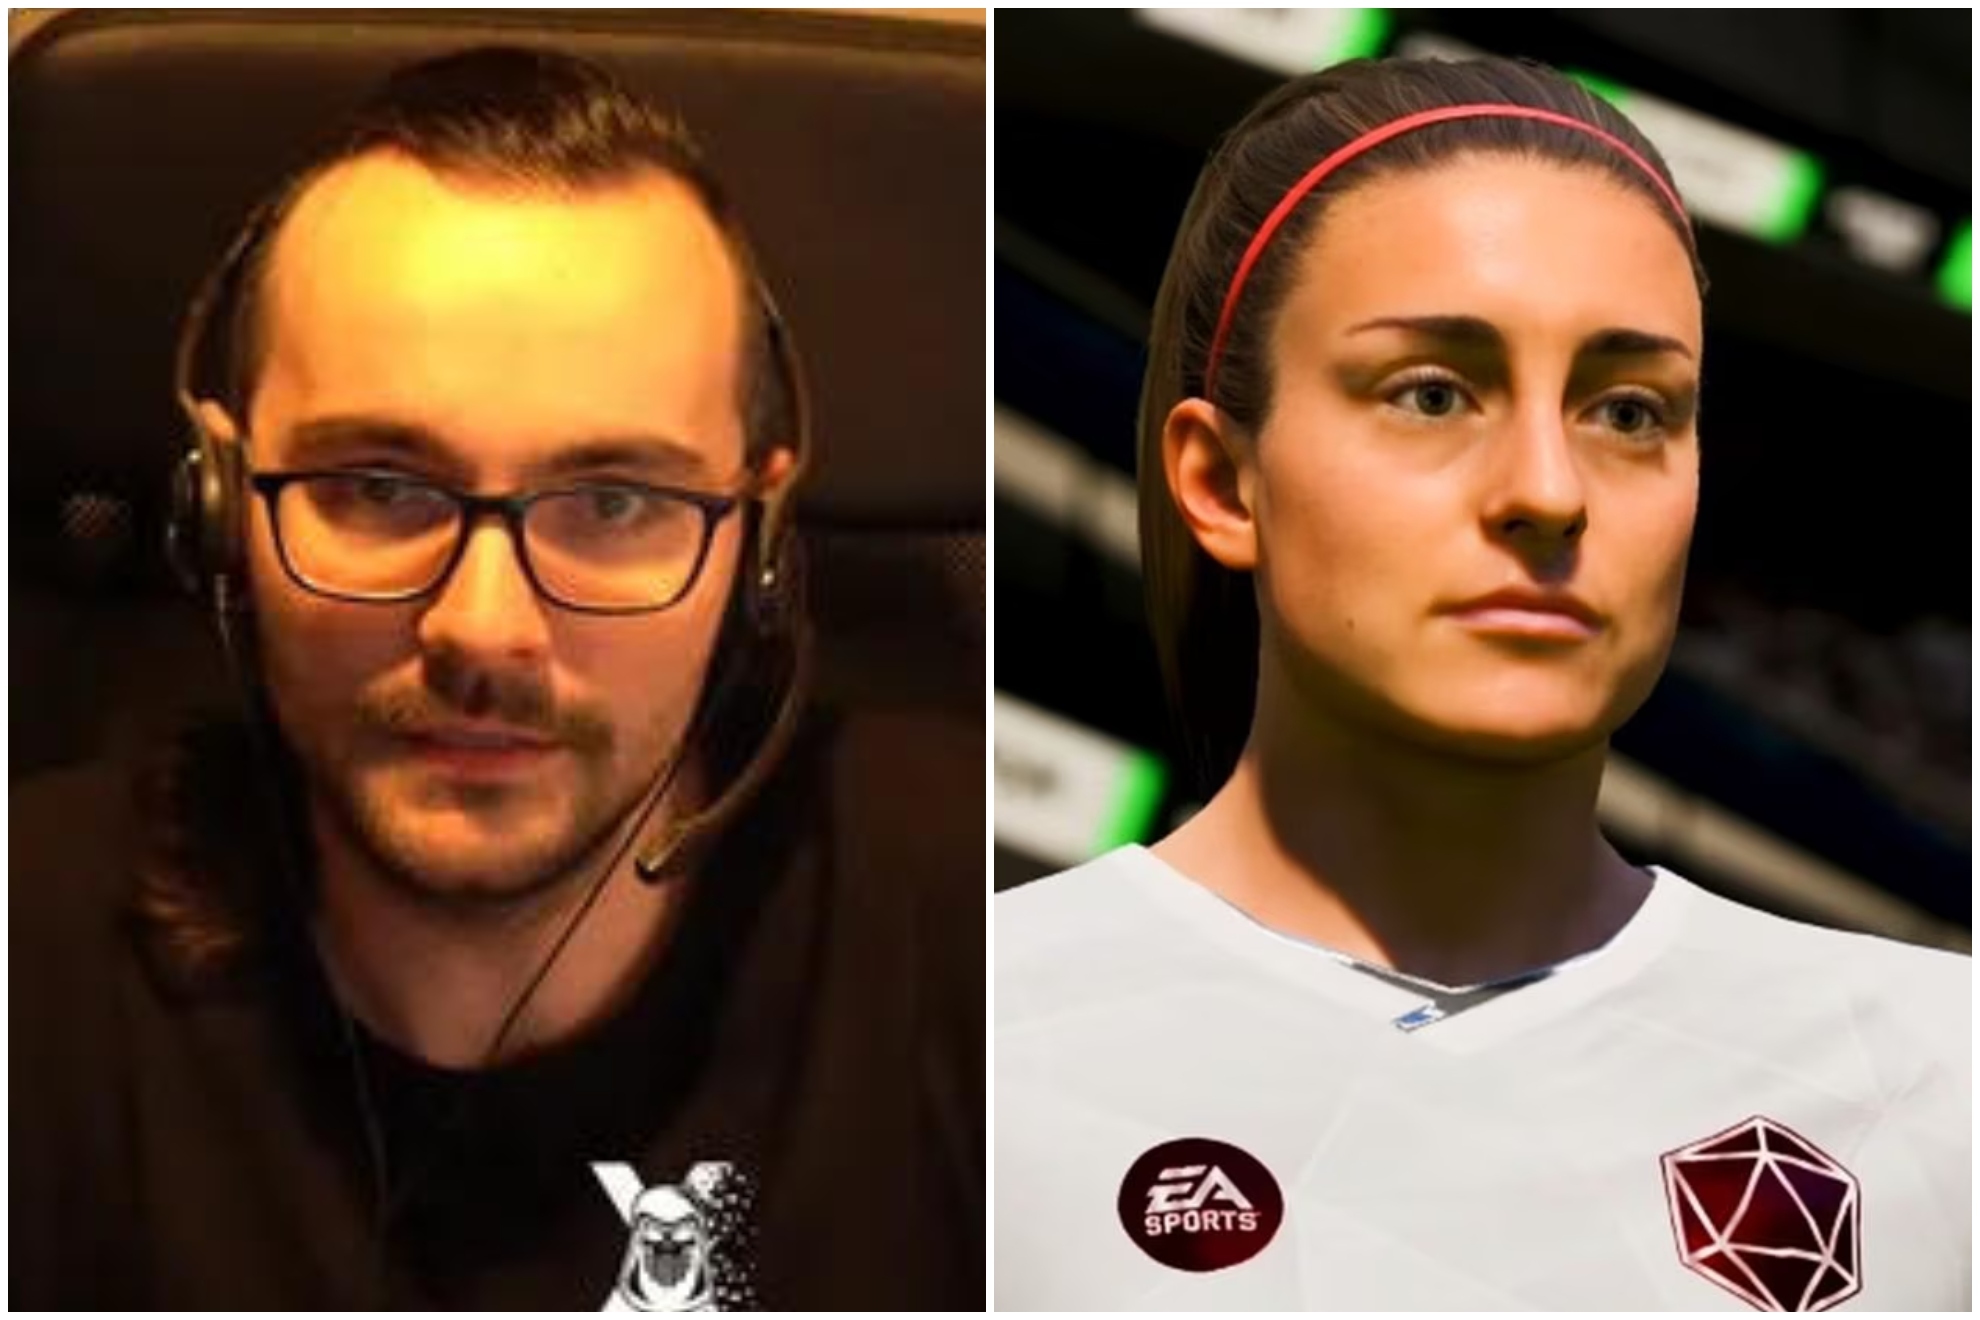 Xokas en contra de que haya mujeres y hombres en el EA Sports FC 24: "Me parece una falta de respeto gravísima"